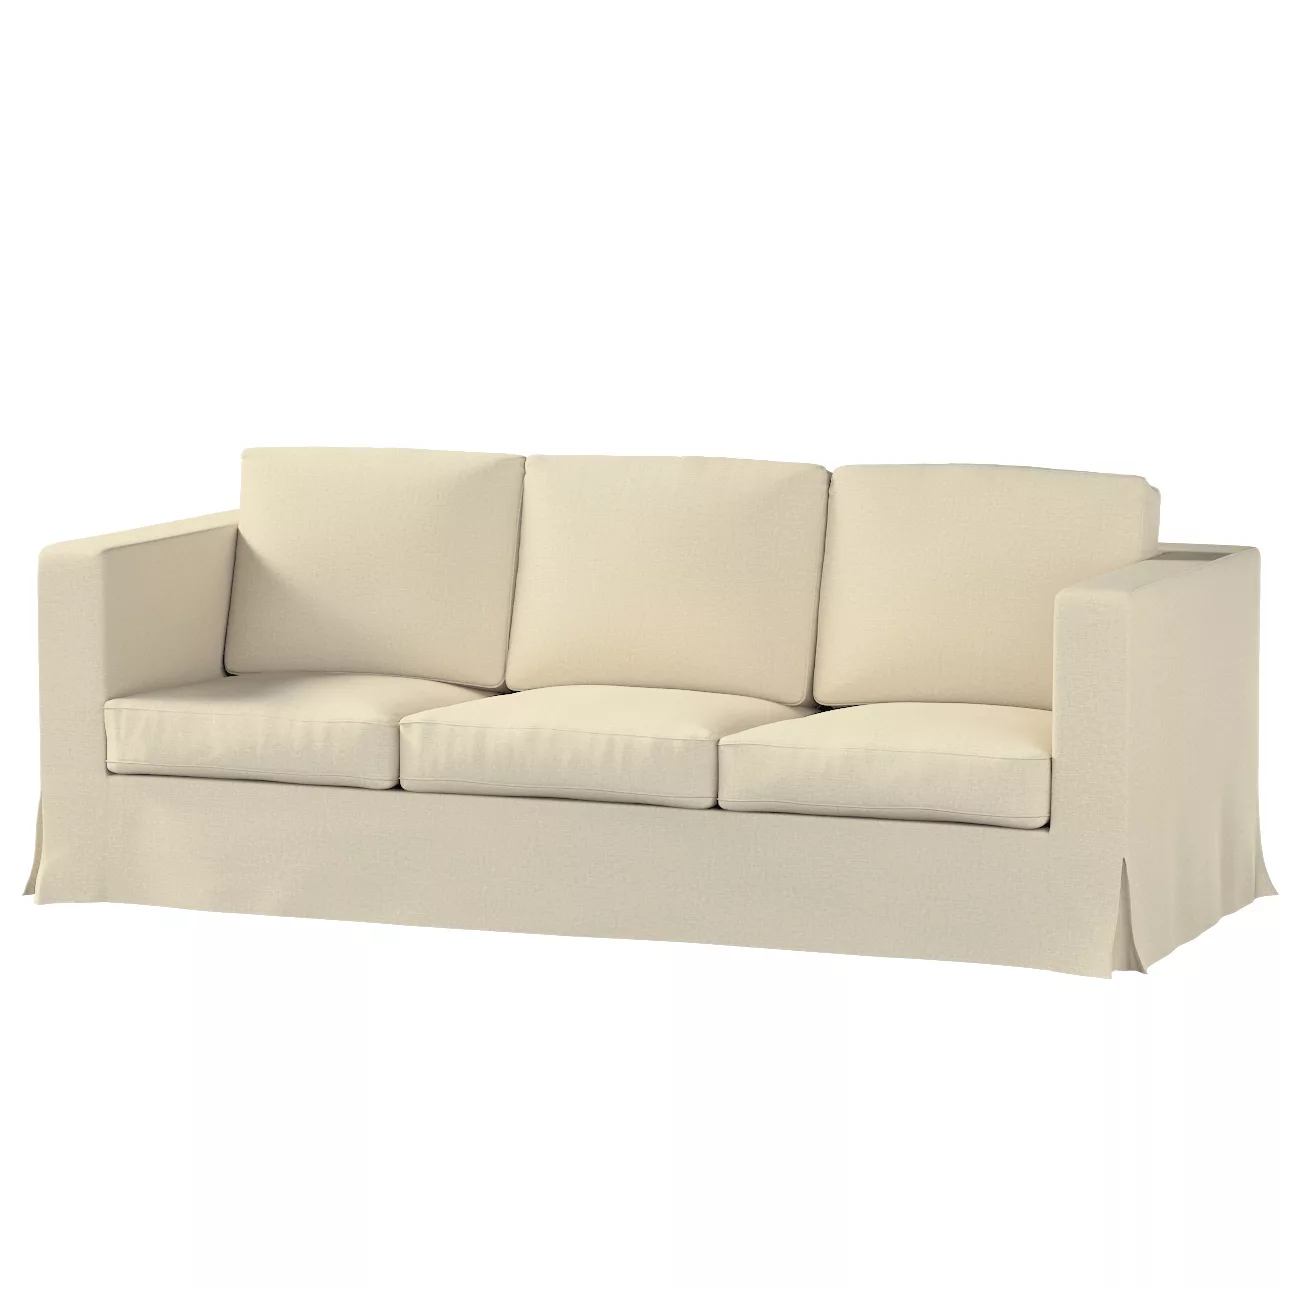 Bezug für Karlanda 3-Sitzer Sofa nicht ausklappbar, lang, ecru, Bezug für S günstig online kaufen